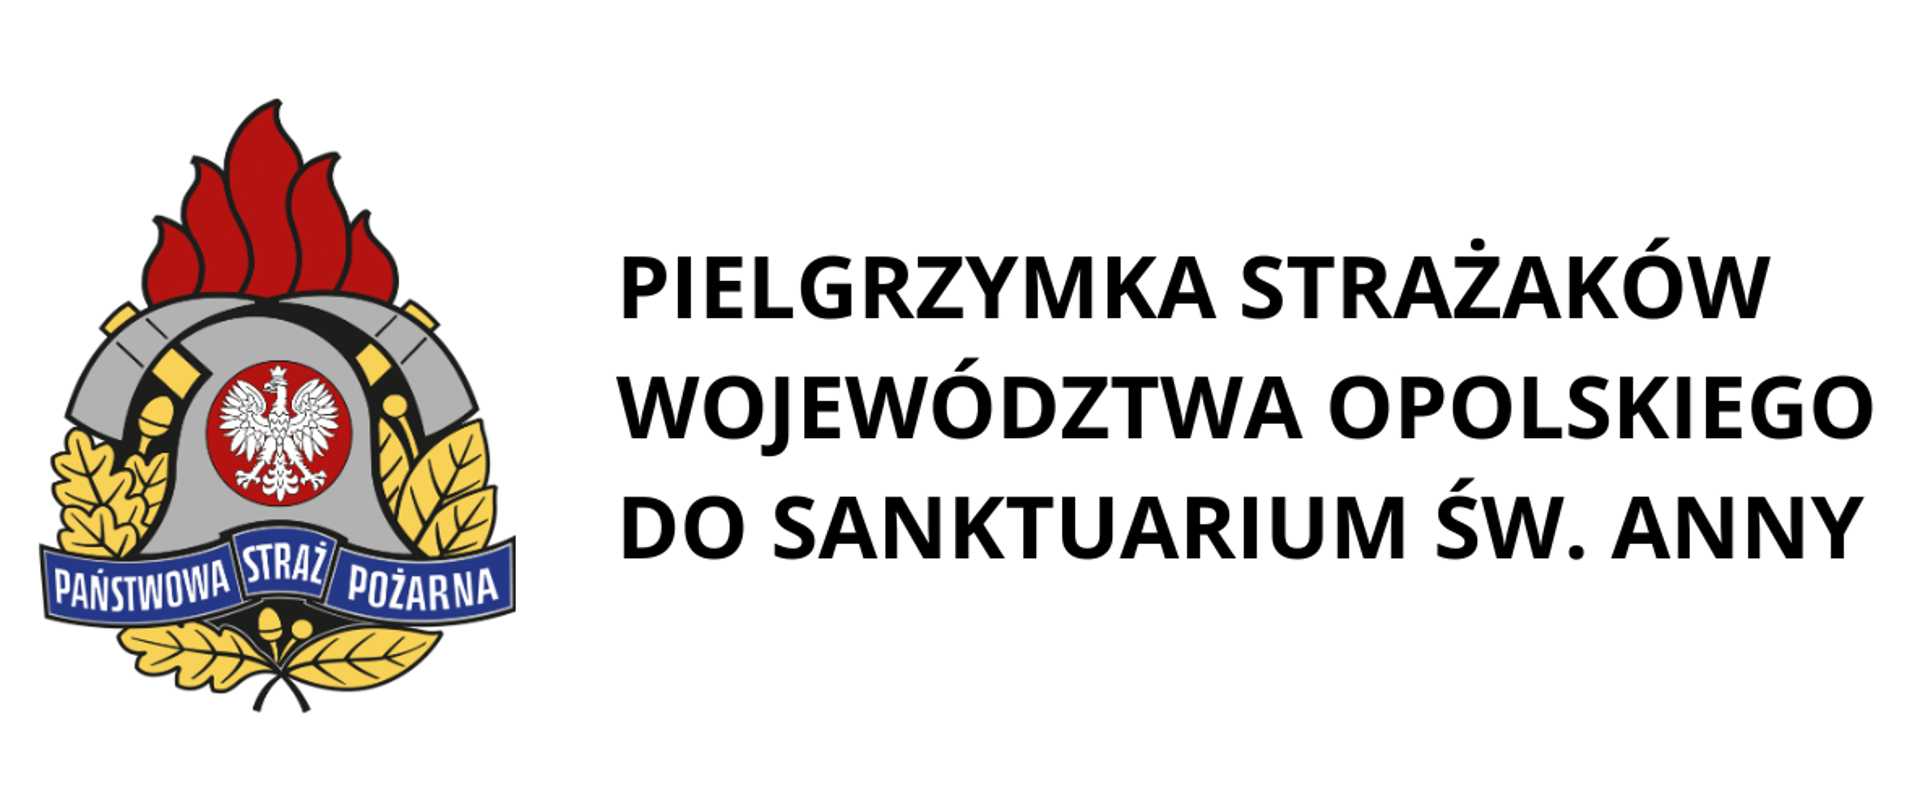 Pielgrzymka strażaków województwa opolskiego do Sanktuarium Świętej Anny na Górze Św. Anny